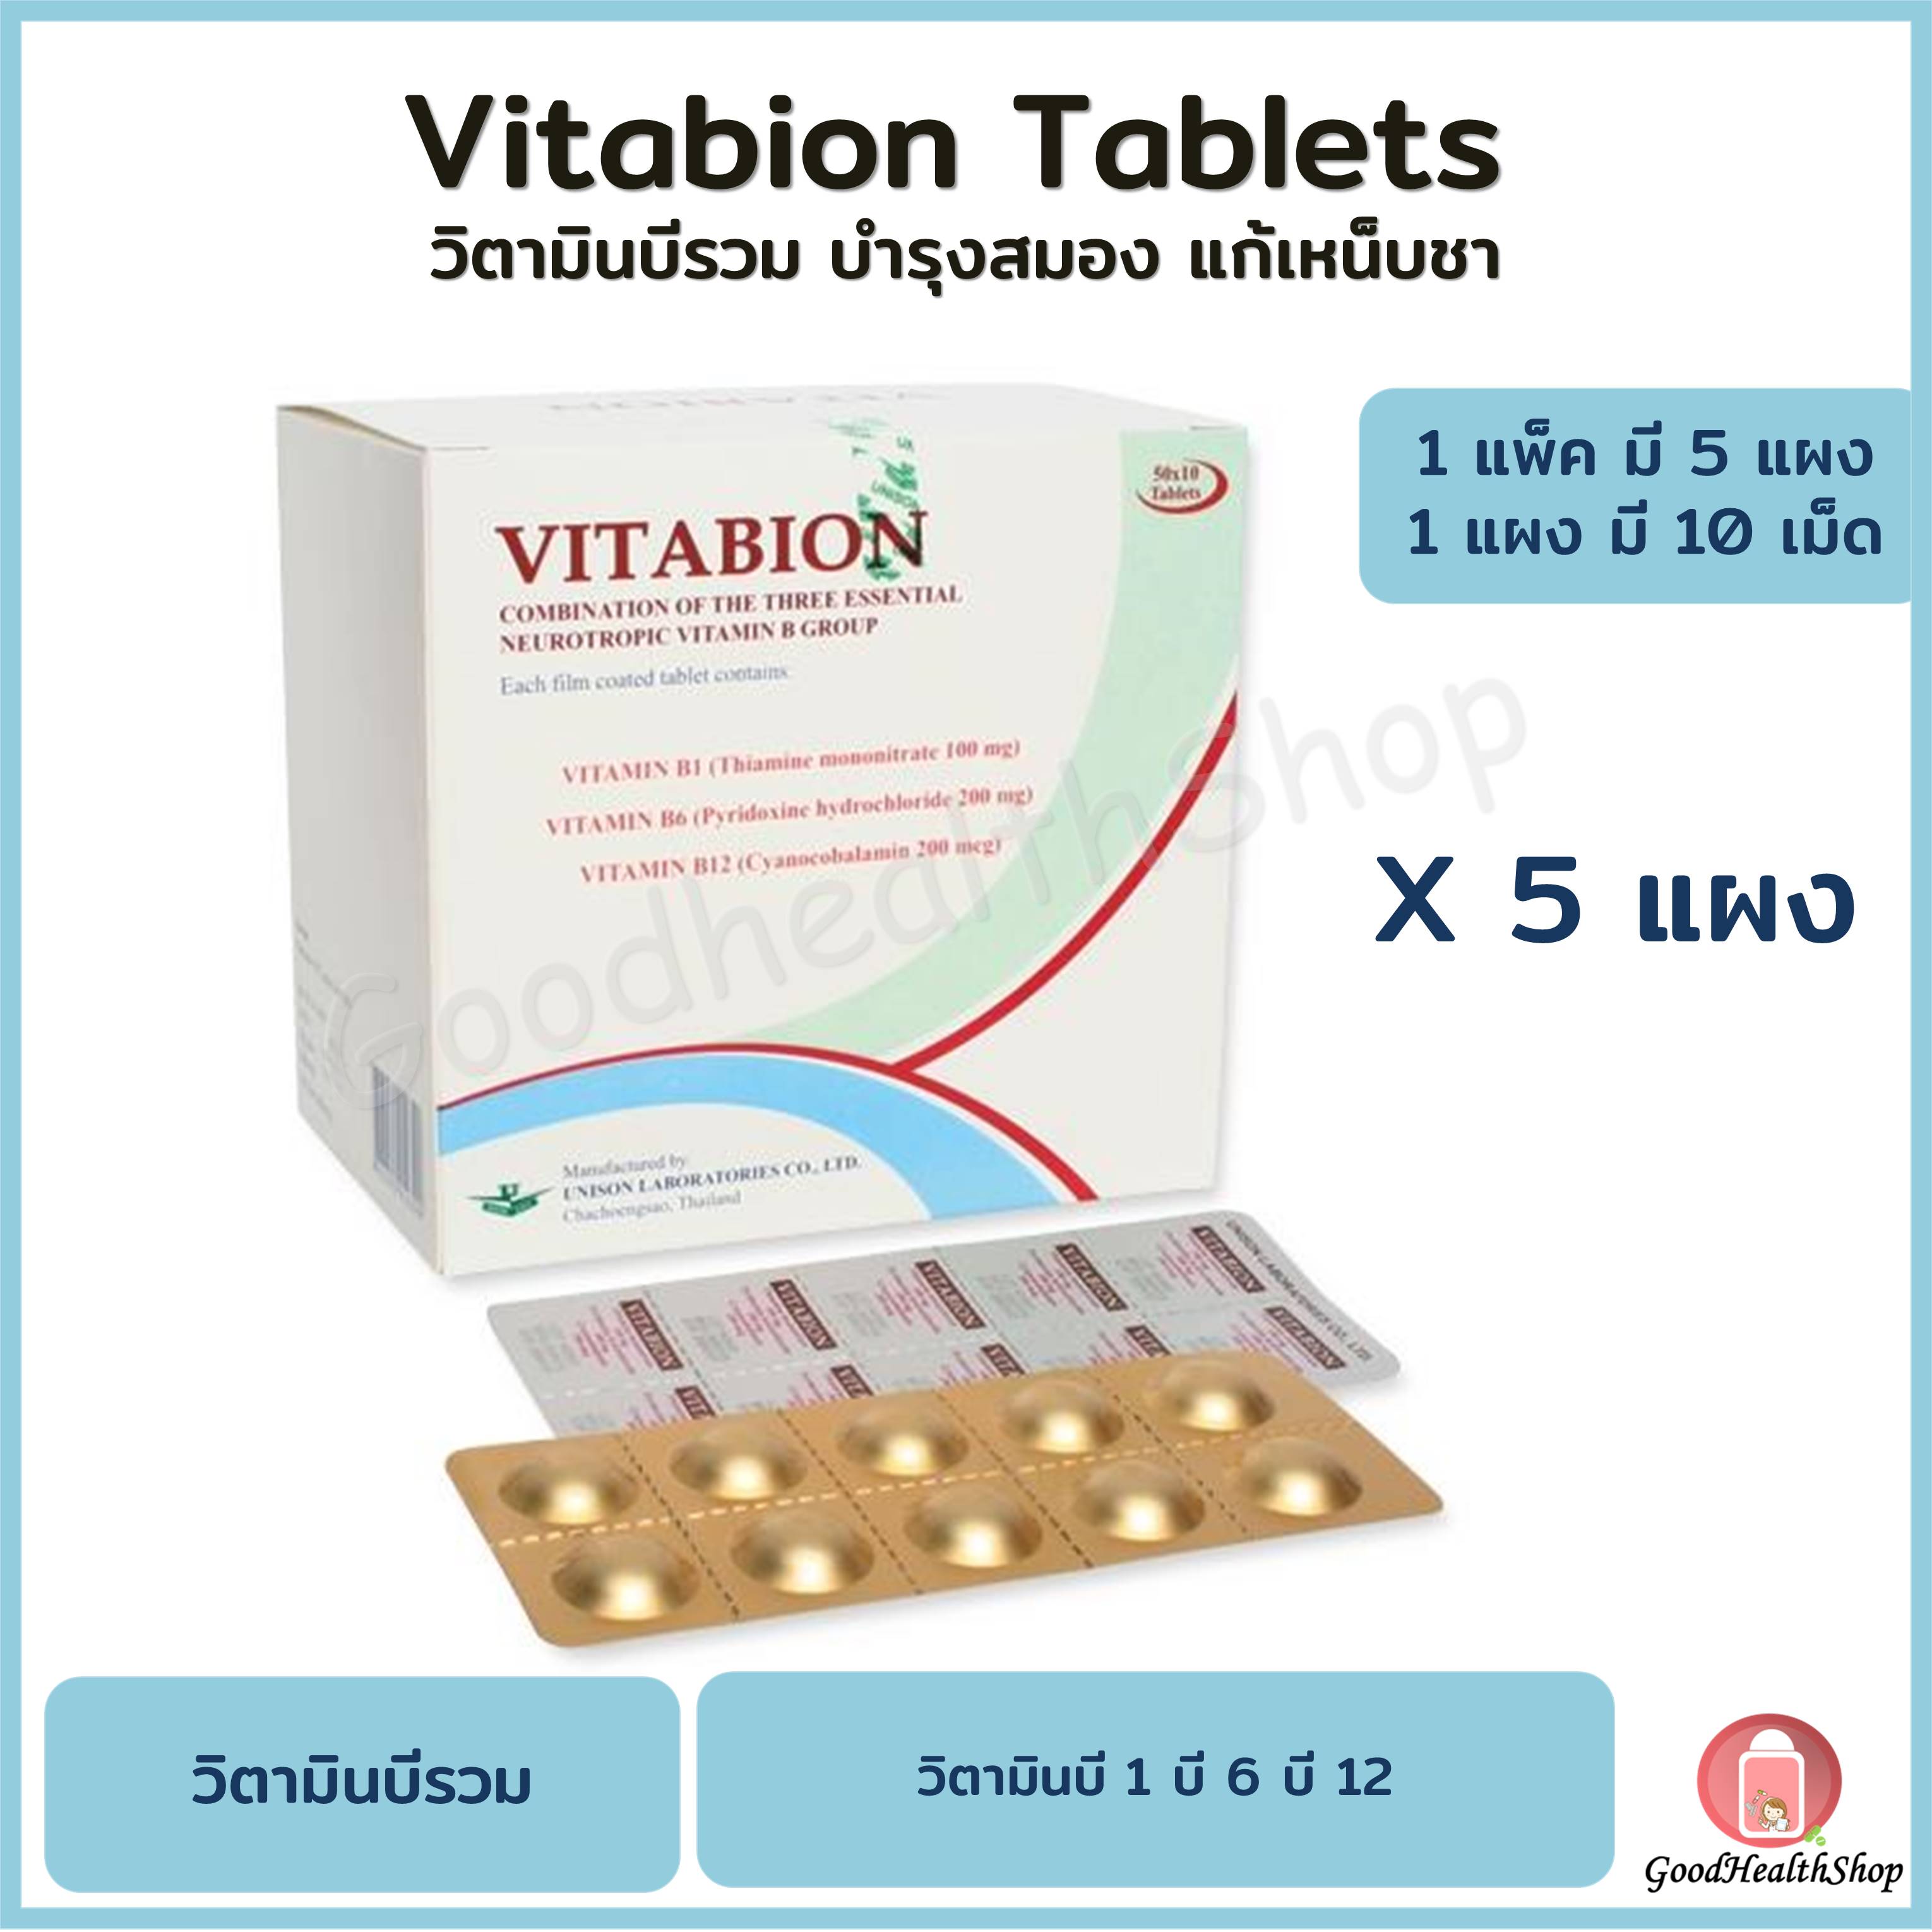 ยา Vitabion ราคาถ ก ซ อออนไลน ท Lazada Co Th